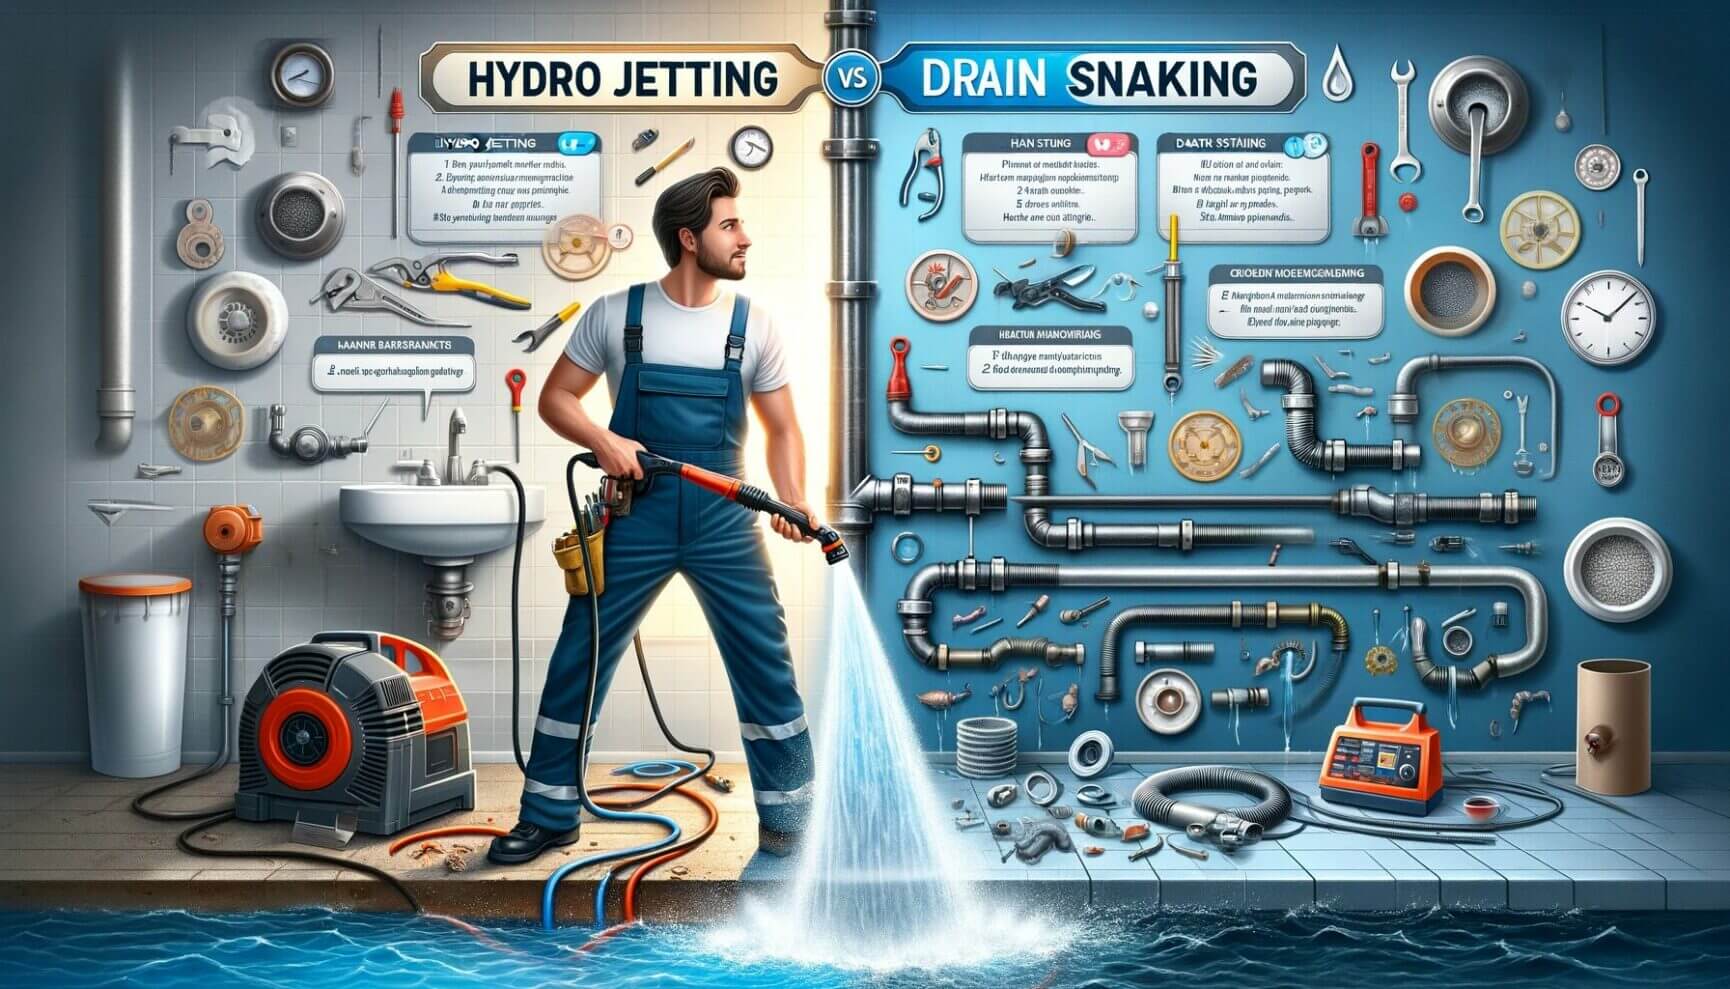 Hydro scrubbing vs drain scrubbing.